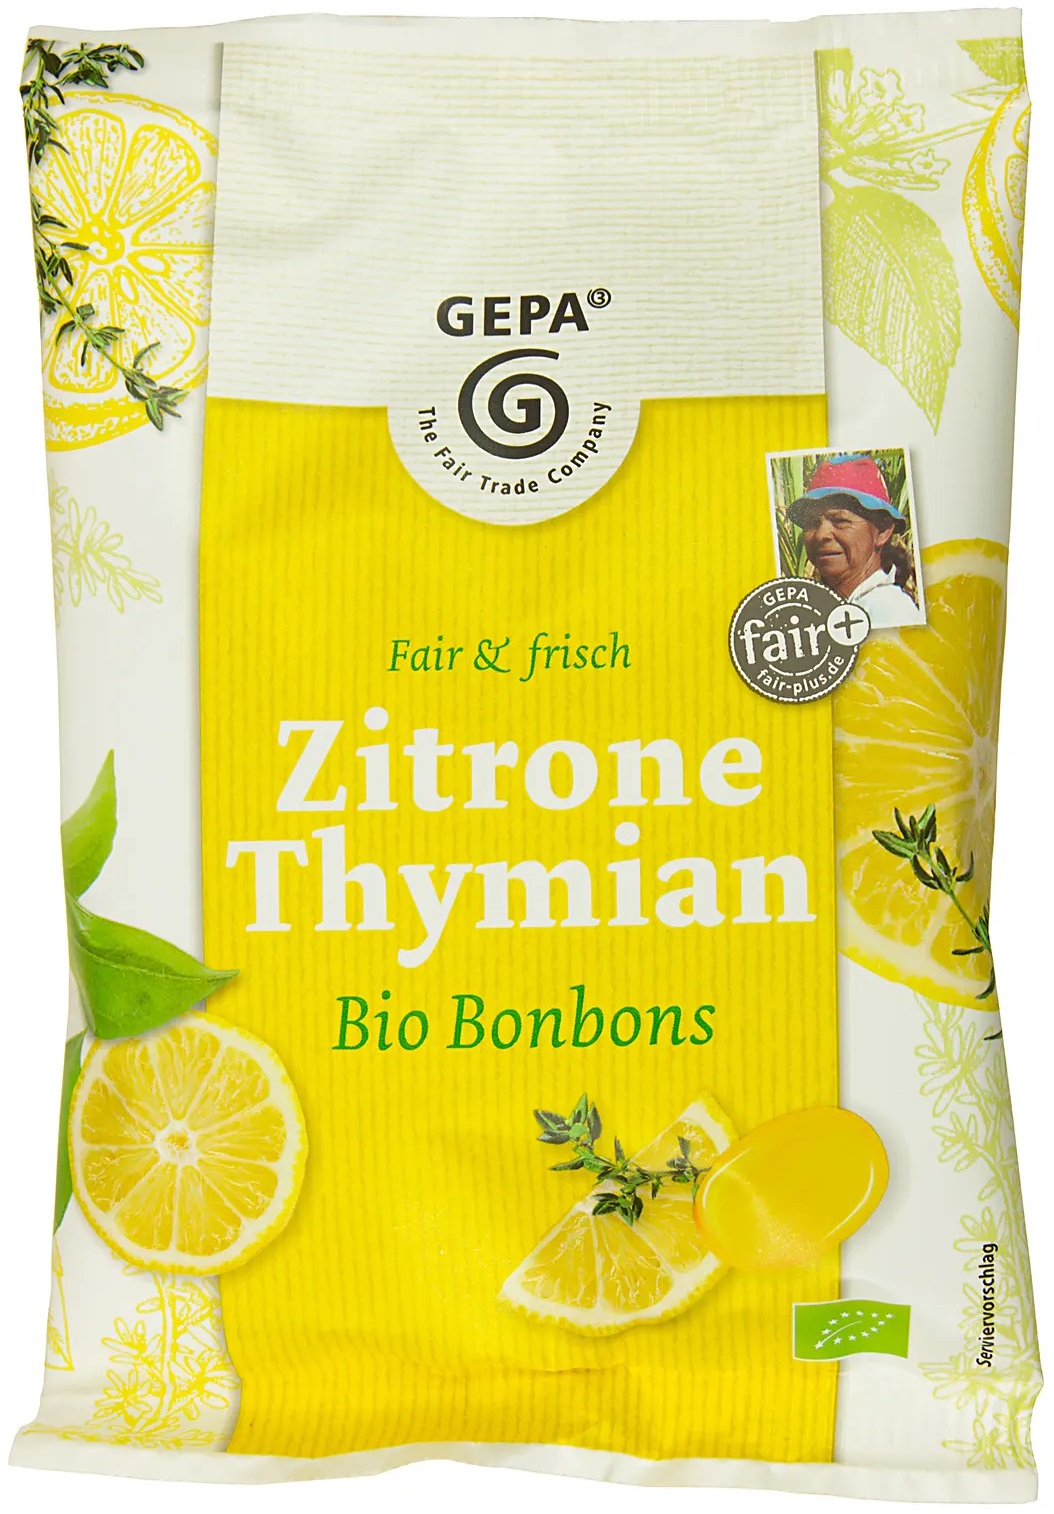 Zitrone Thymian main image